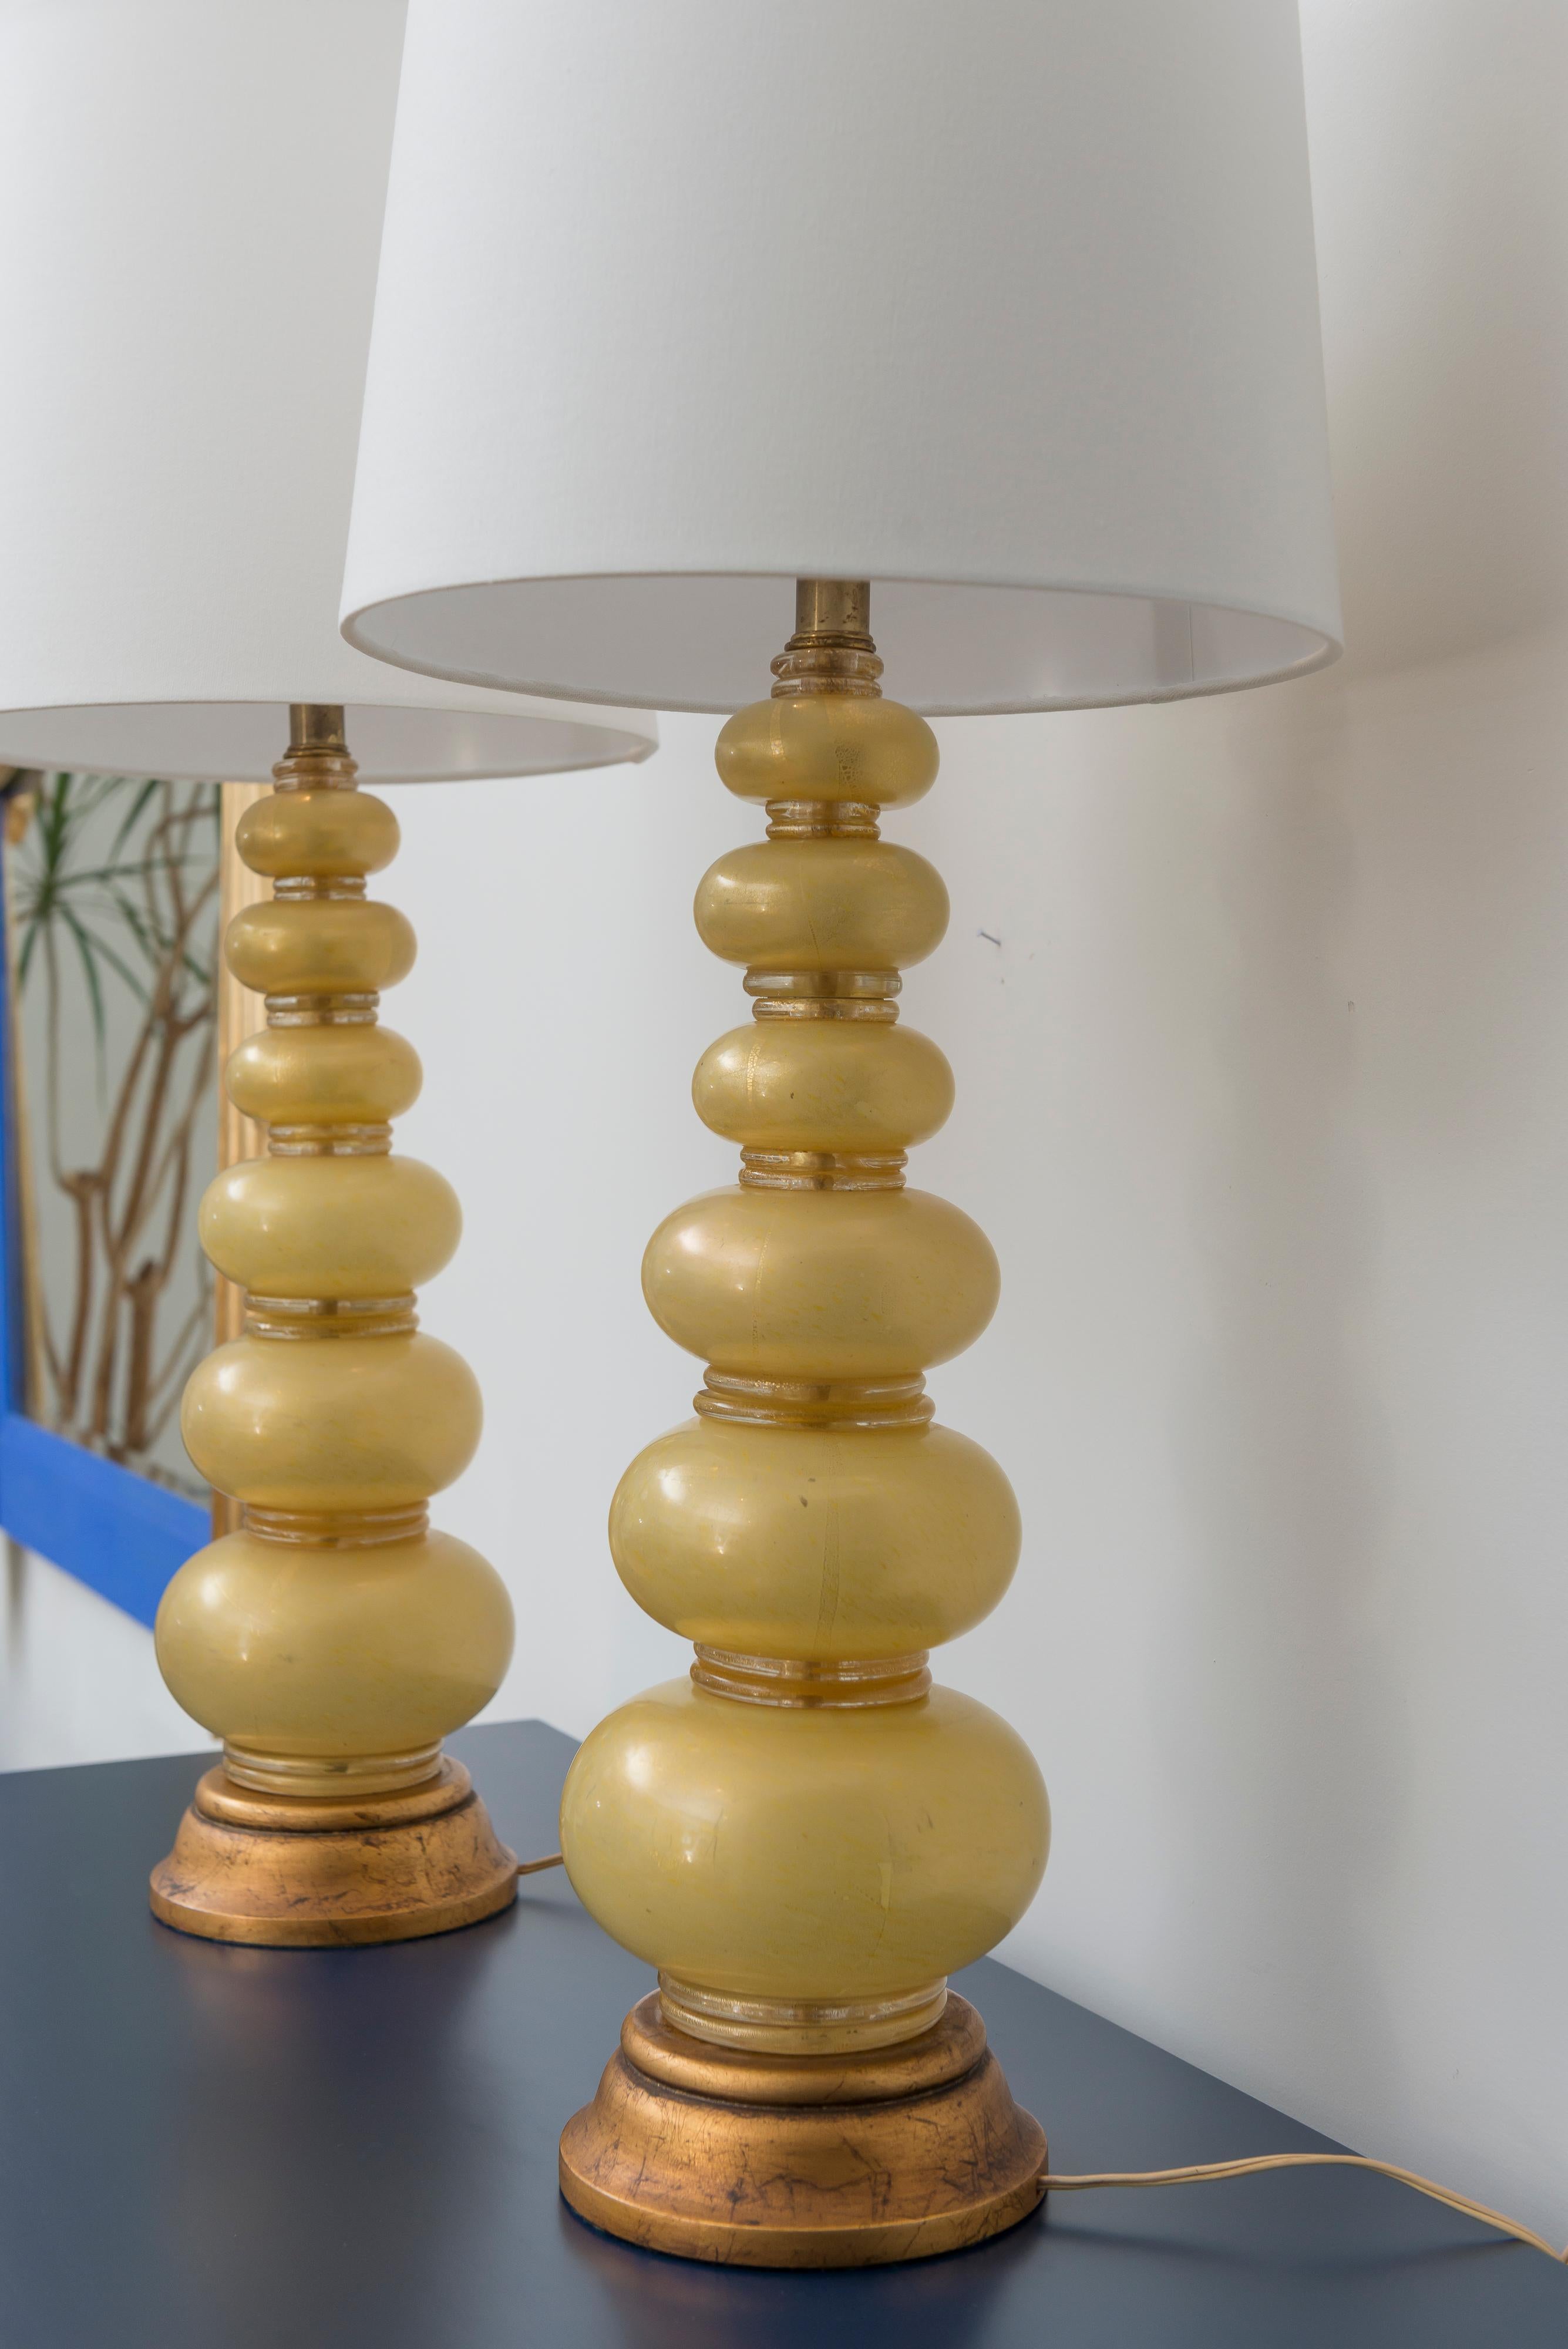 Murano-Glaslampe mit Goldeinschlüssen von Barovier & Toso. Schöne Proportionen mit elegantem, langgestrecktem Körper. Neu verkabelt. Die Lampenschirme sind nicht enthalten.